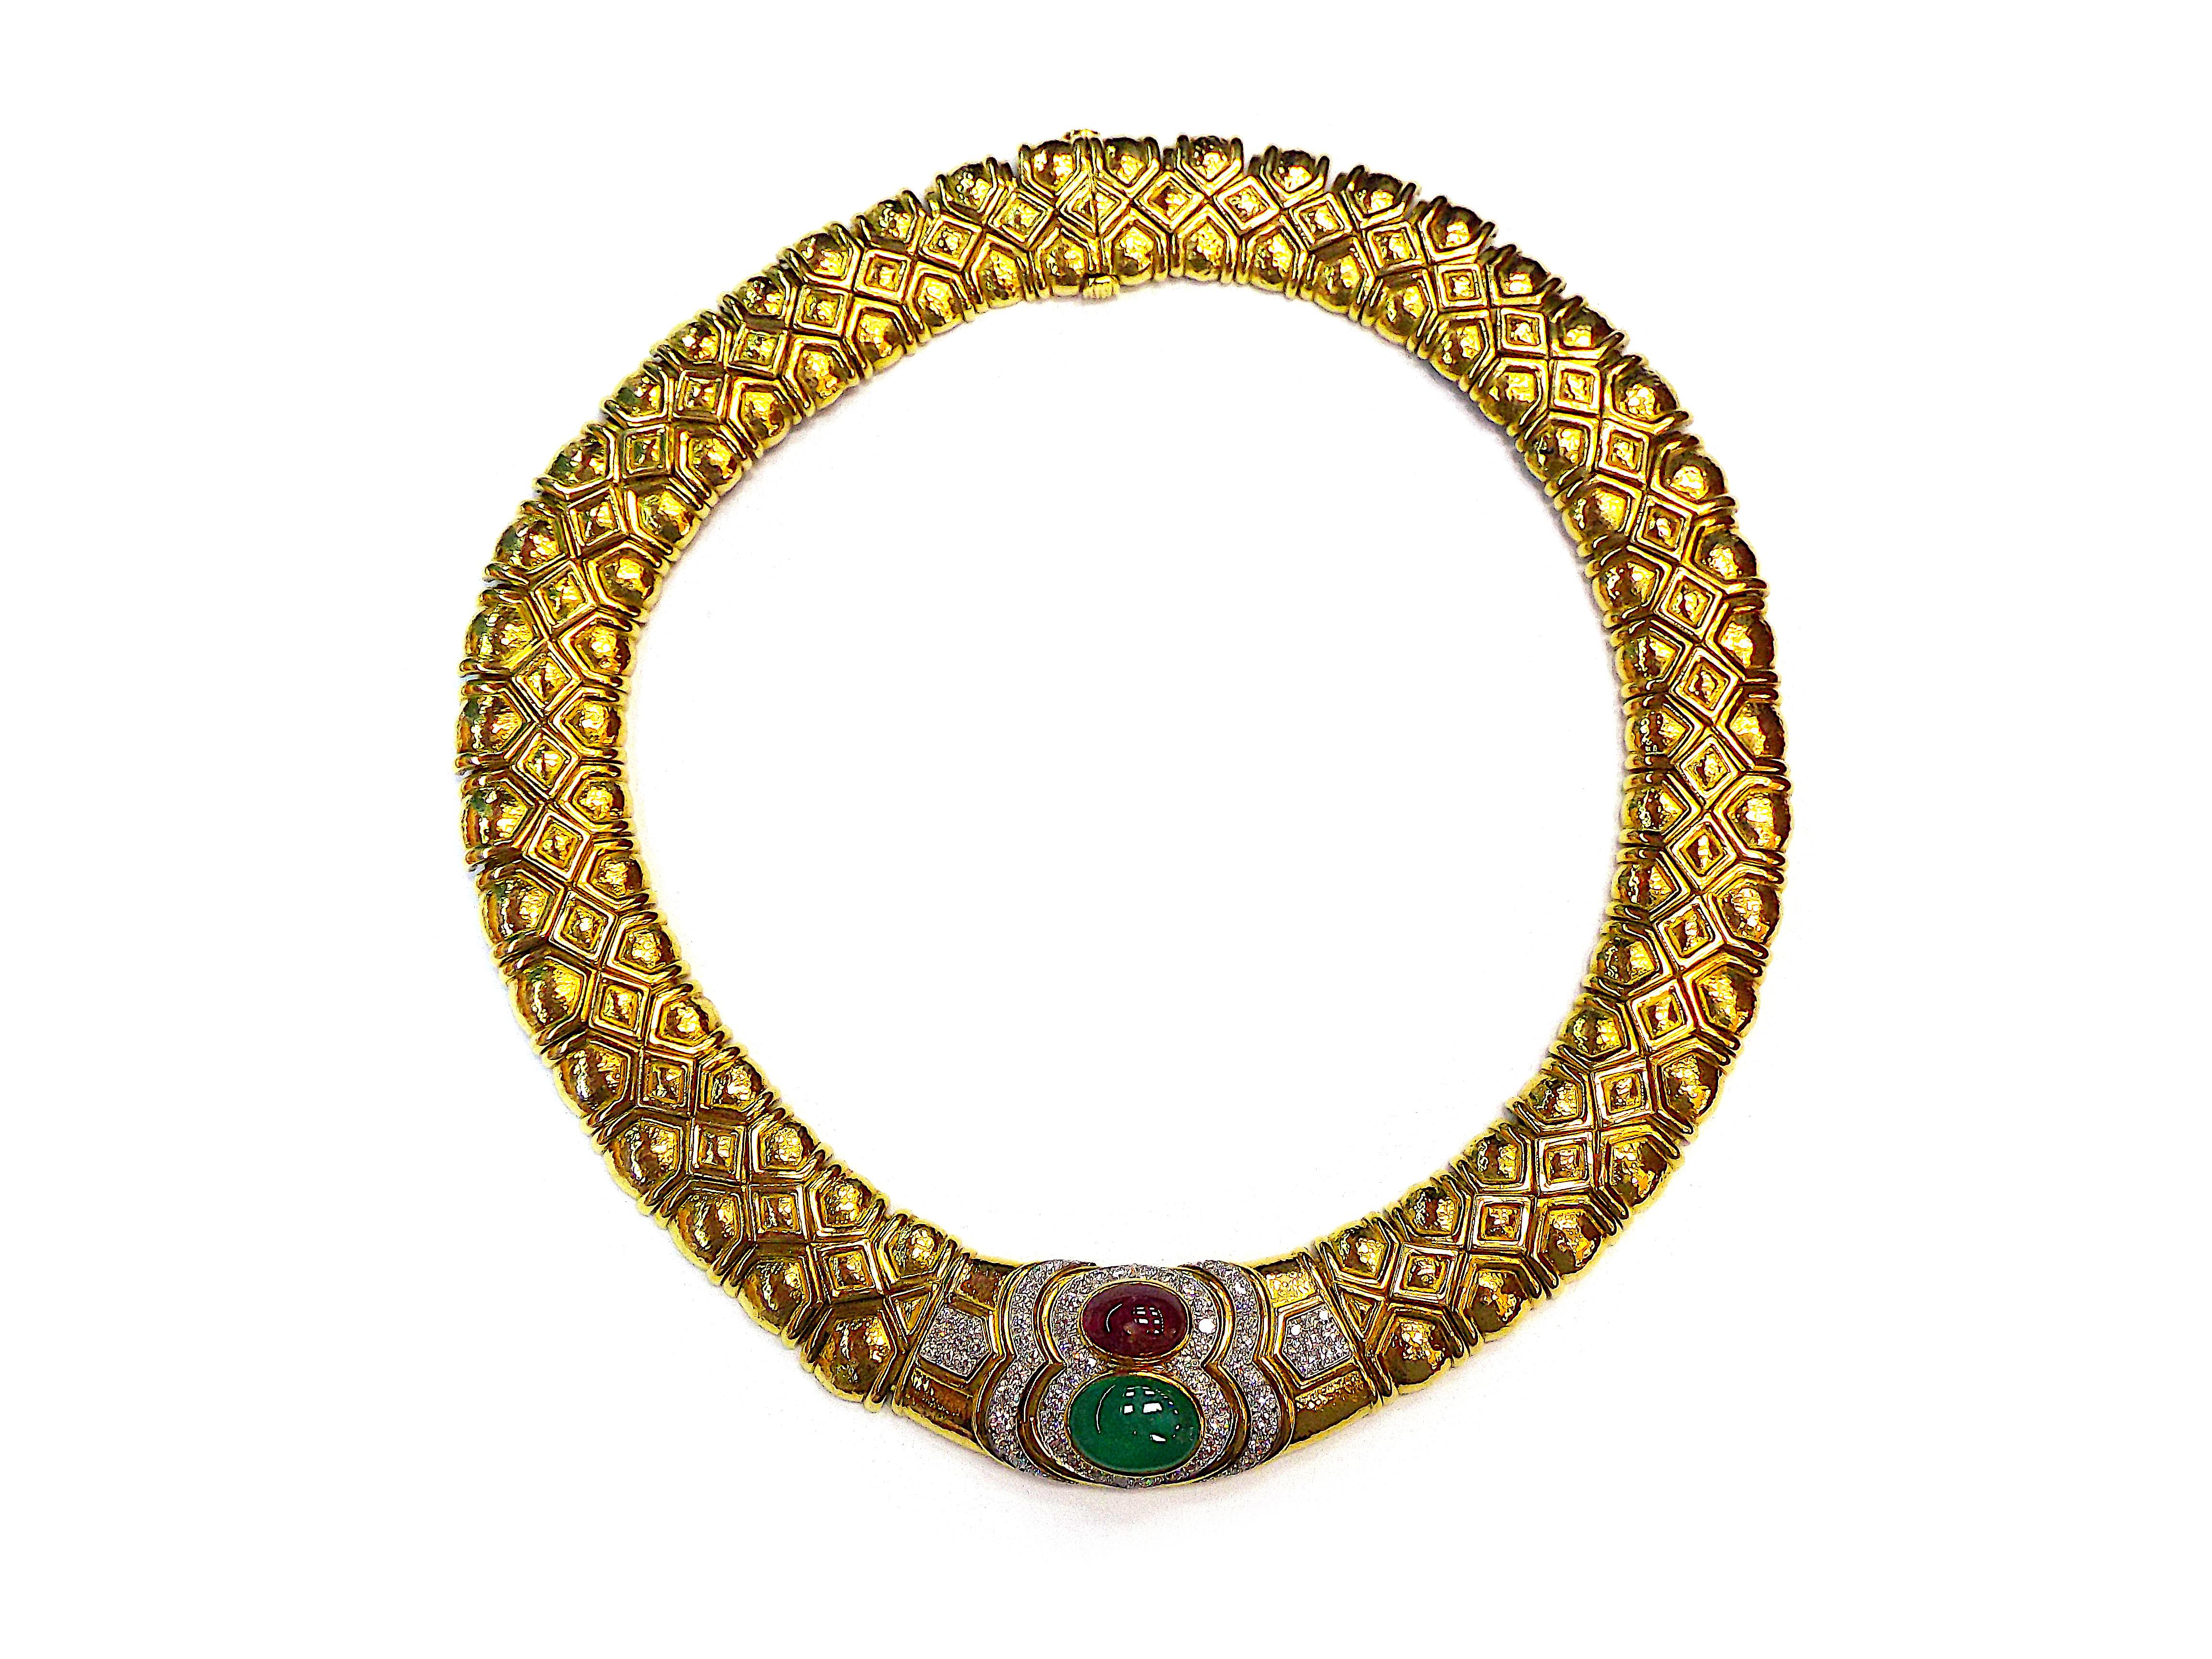 Le large collier en or composé de maillons géométriques en or martelé, présentant une émeraude et un rubis cabochon, encadrés et accentués par des diamants ronds, ainsi qu'une paire de boucles d'oreille de conception similaire.
Les diamants pèsent